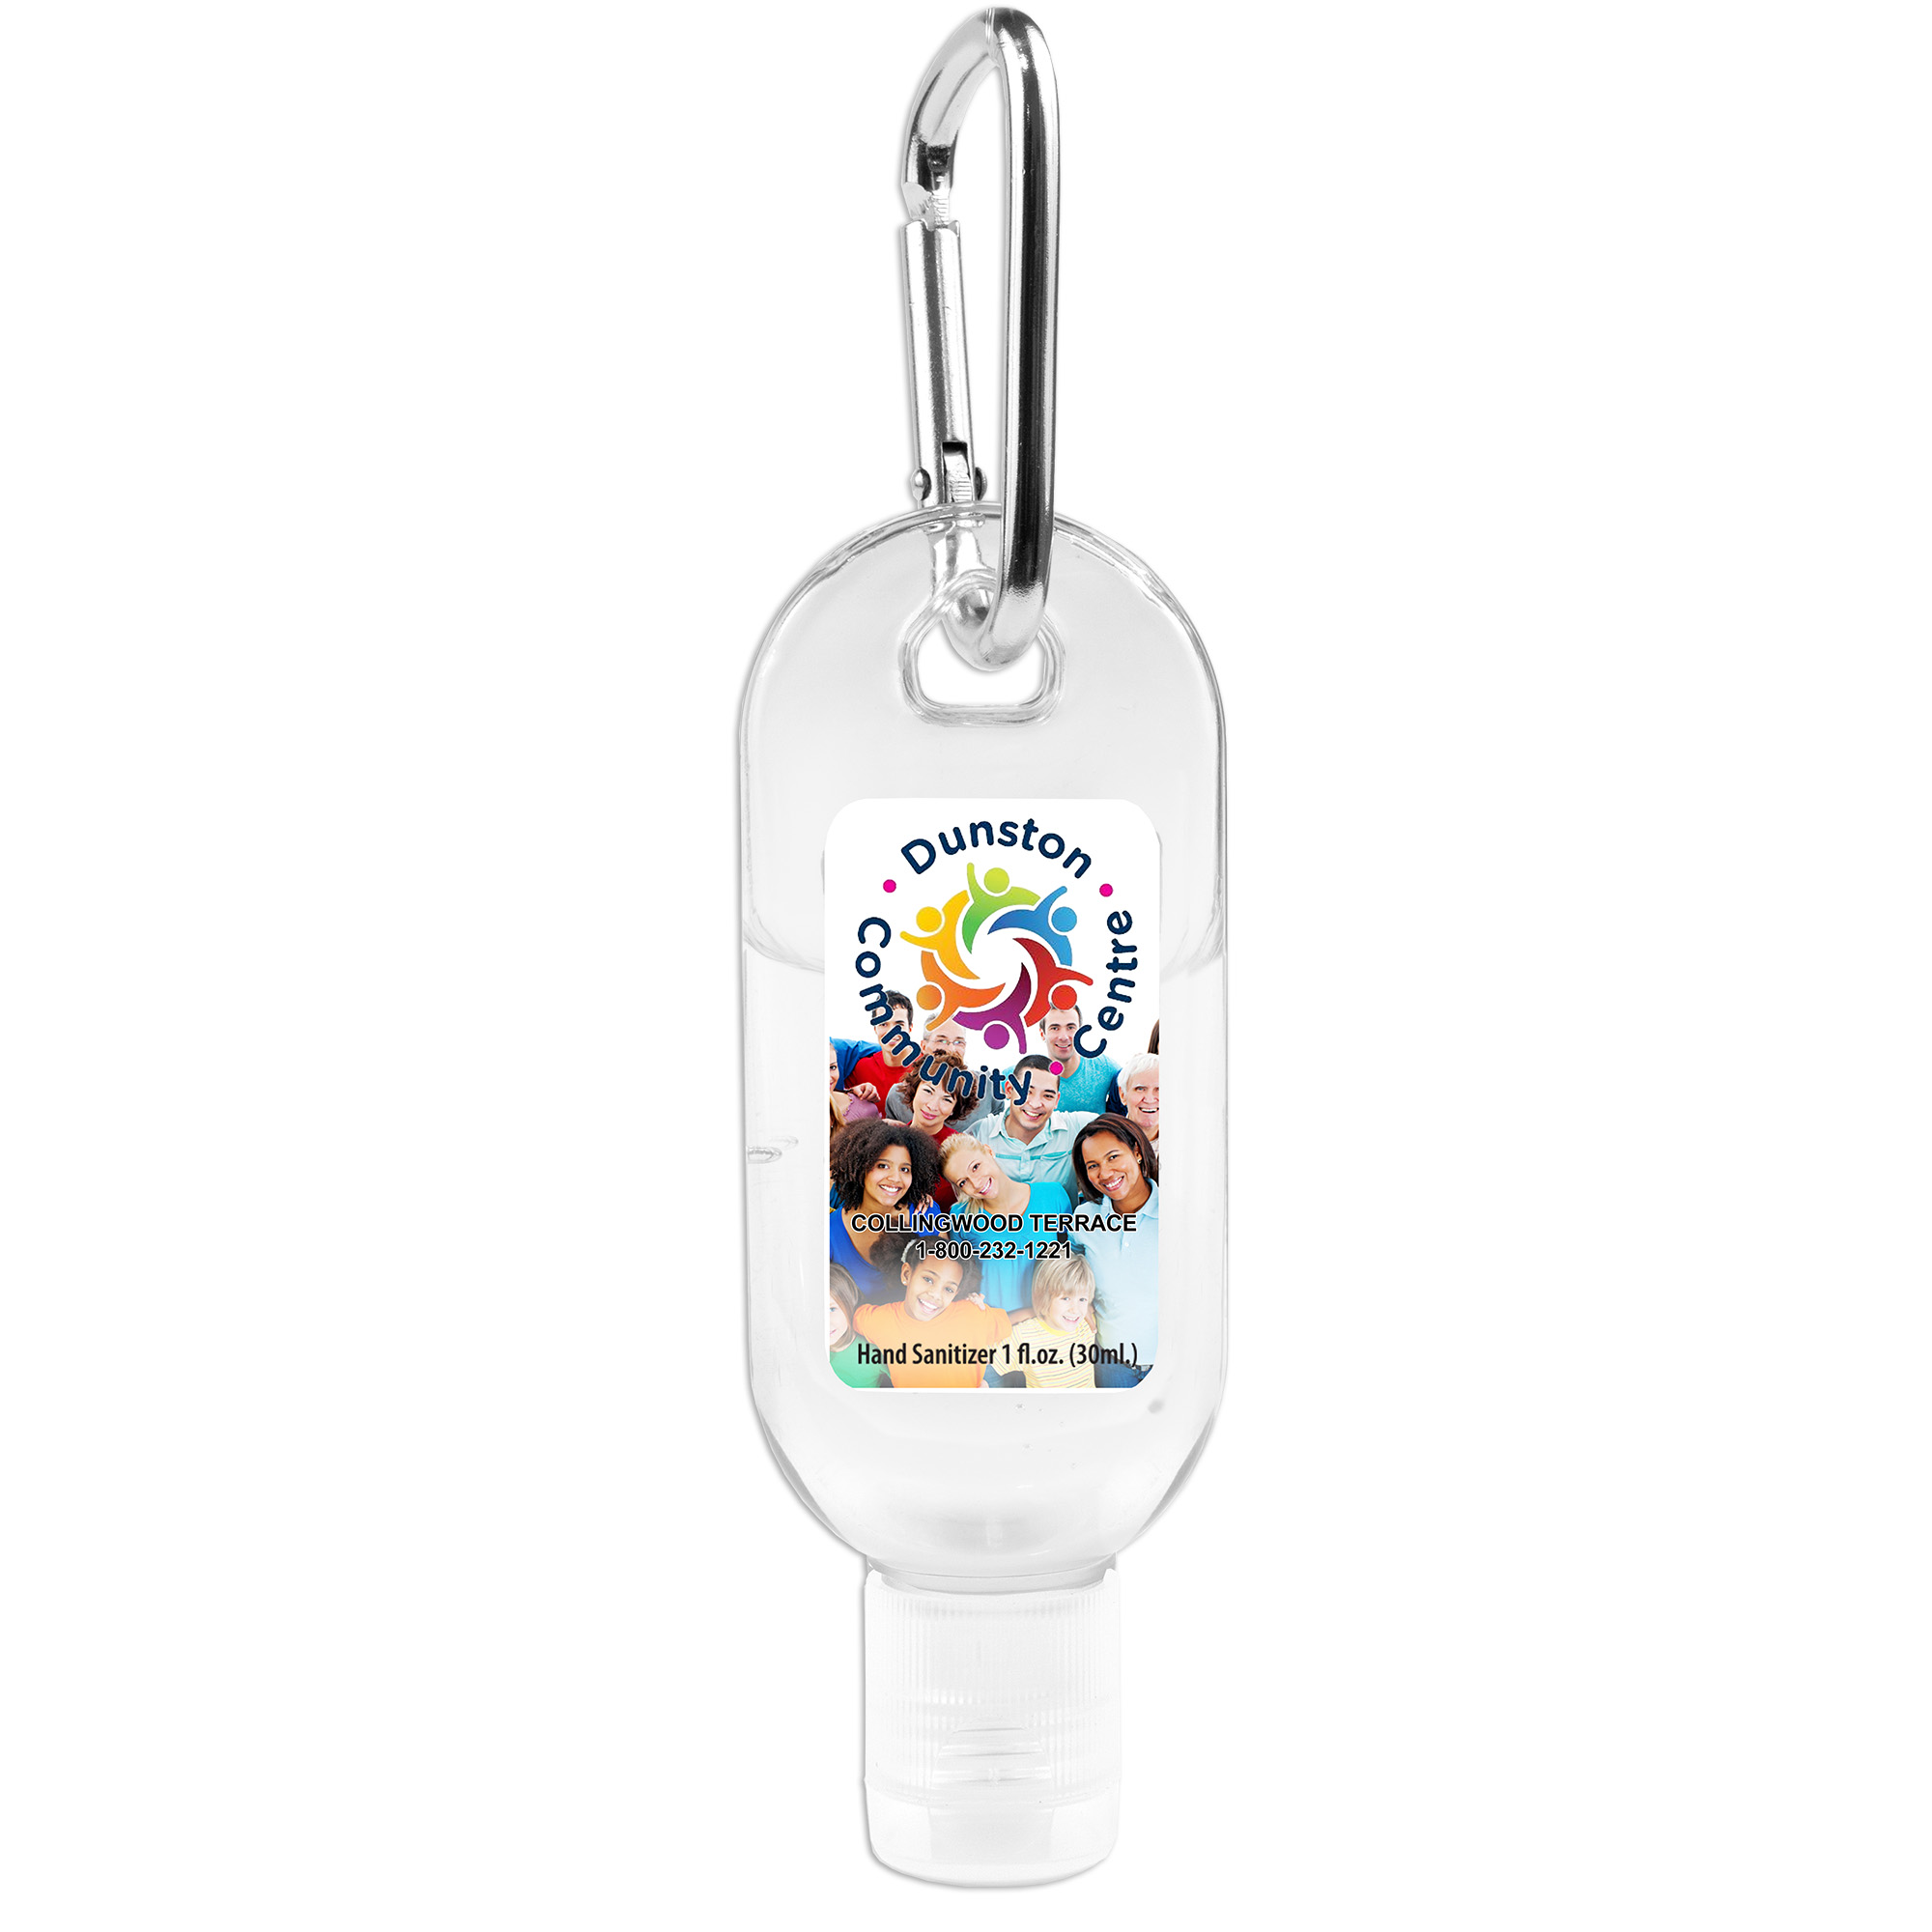 “SanGo” 1.0 oz Hand Sanitizer Antibacterial Gel in Flip-Top Bottle with Carabiner